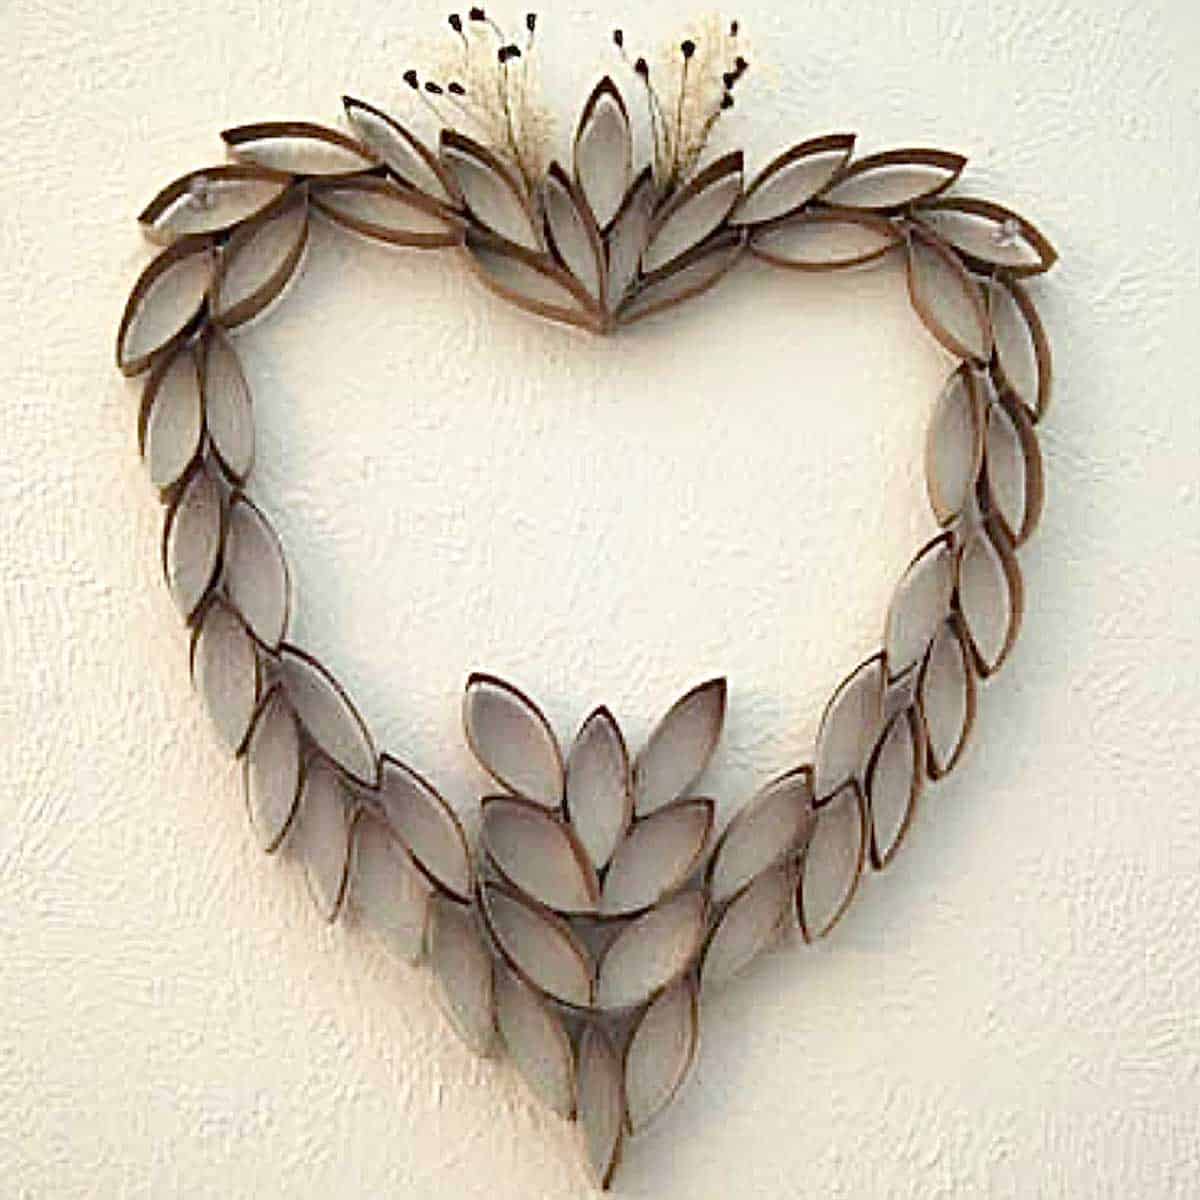 https://www.happysimpleliving.com/wp-content/uploads/2009/11/toilet-paper-tube-heart-art.jpg